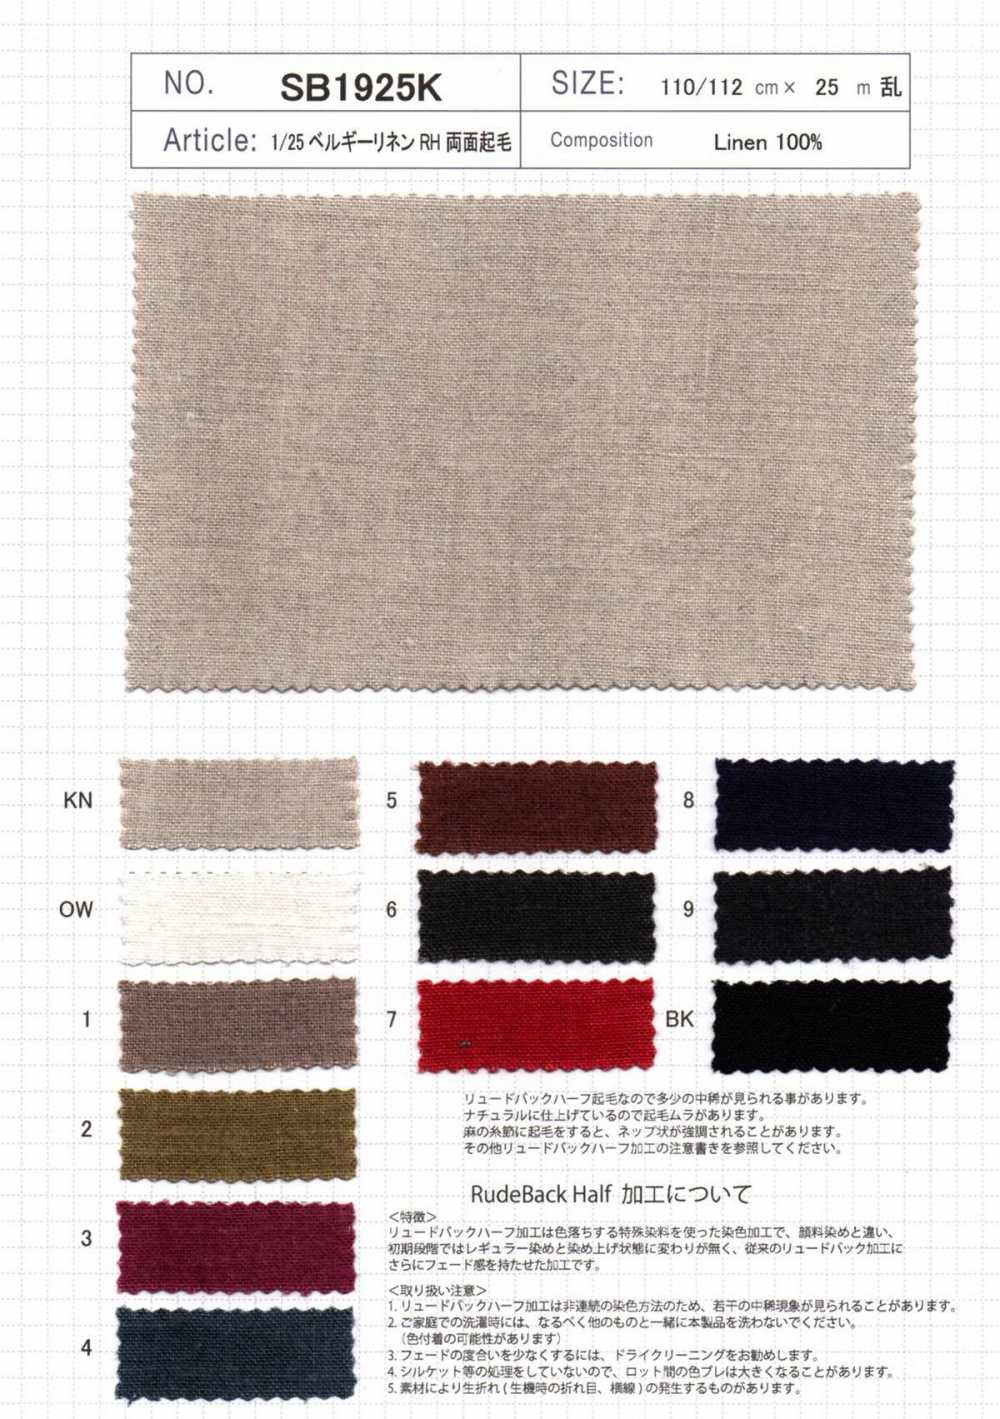 SB1925K Nome Prodotto 1/25 Lino Belga RH Fuzzy Su Entrambi I Lati[Tessile / Tessuto] SHIBAYA